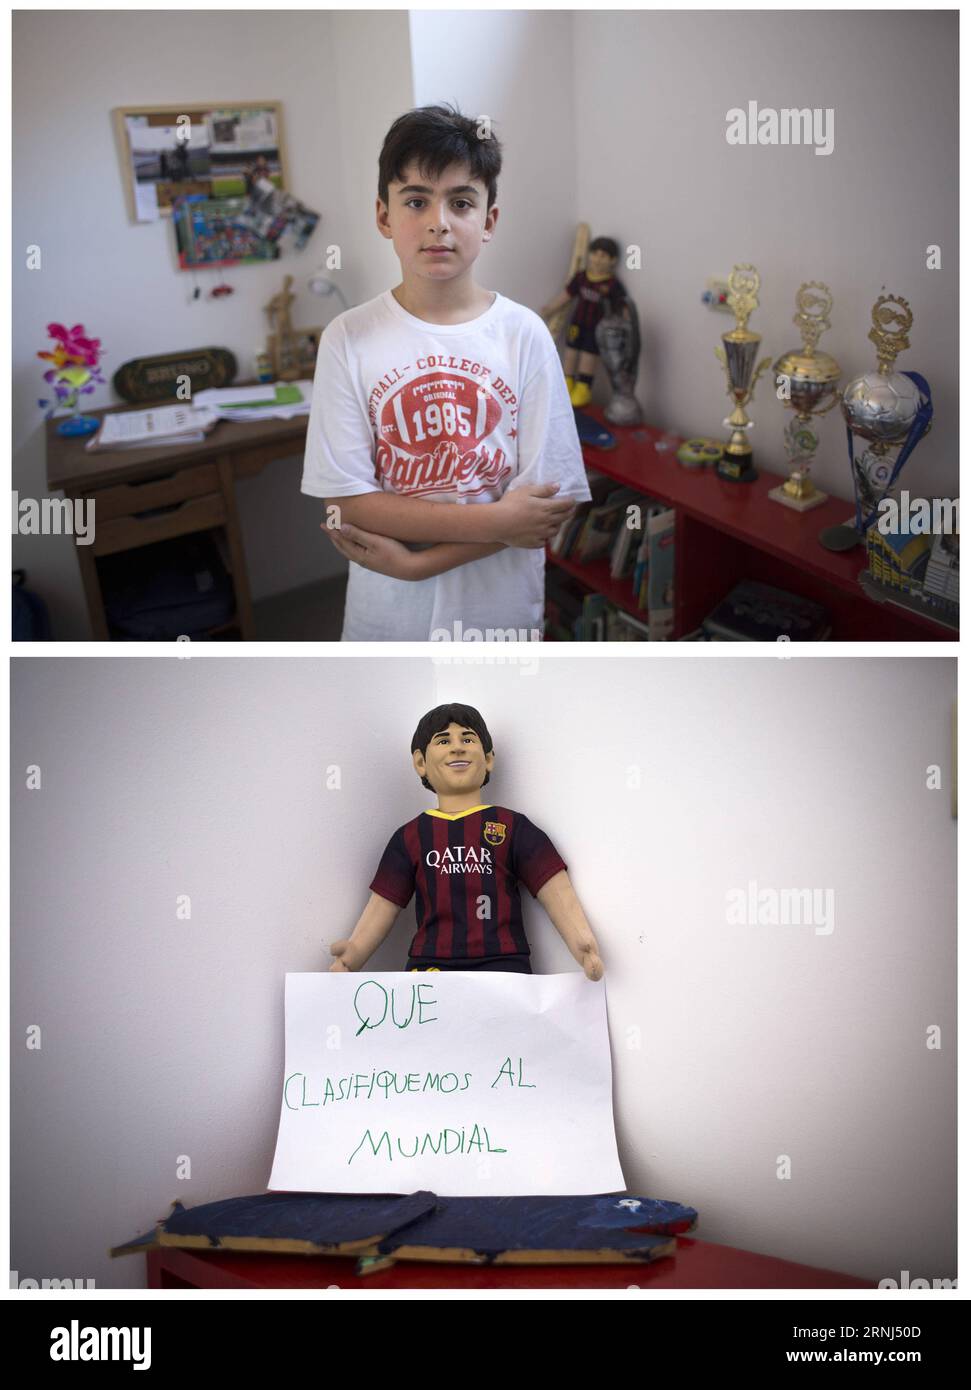 (170101) -- BUENOS AIRES, 1. Januar 2017 -- Bilder aufgenommen am 29. Dezember 2016 zeigt Bruno, zehn Jahre alt, in seinem Zimmer posiert, mit einem Schreiben, das seinen Wunsch nach 2017 in Buenos Aires, Argentinien, verrät. Bruno wünscht, dass die argentinische Fußballnationalmannschaft an der Fußball-Weltmeisterschaft 2018 teilnehmen kann. Martin Zabala) (sxk) ARGENTINA-BUENOS AIRES-SOCIETY-NEW YEAR-FEATURE e MARTINxZABALA PUBLICATIONxNOTxINxCHN Buenos Aires Jan 1 2017 Bilder aufgenommen AM DEC 29 2016 zeigt Bruno Ten Years Old in seinem Zimmer mit einer Schrift, die seinen Wunsch für 2017 in Buenos Aires argentina erklärt Bruno wünscht Thatcher den Argen Stockfoto